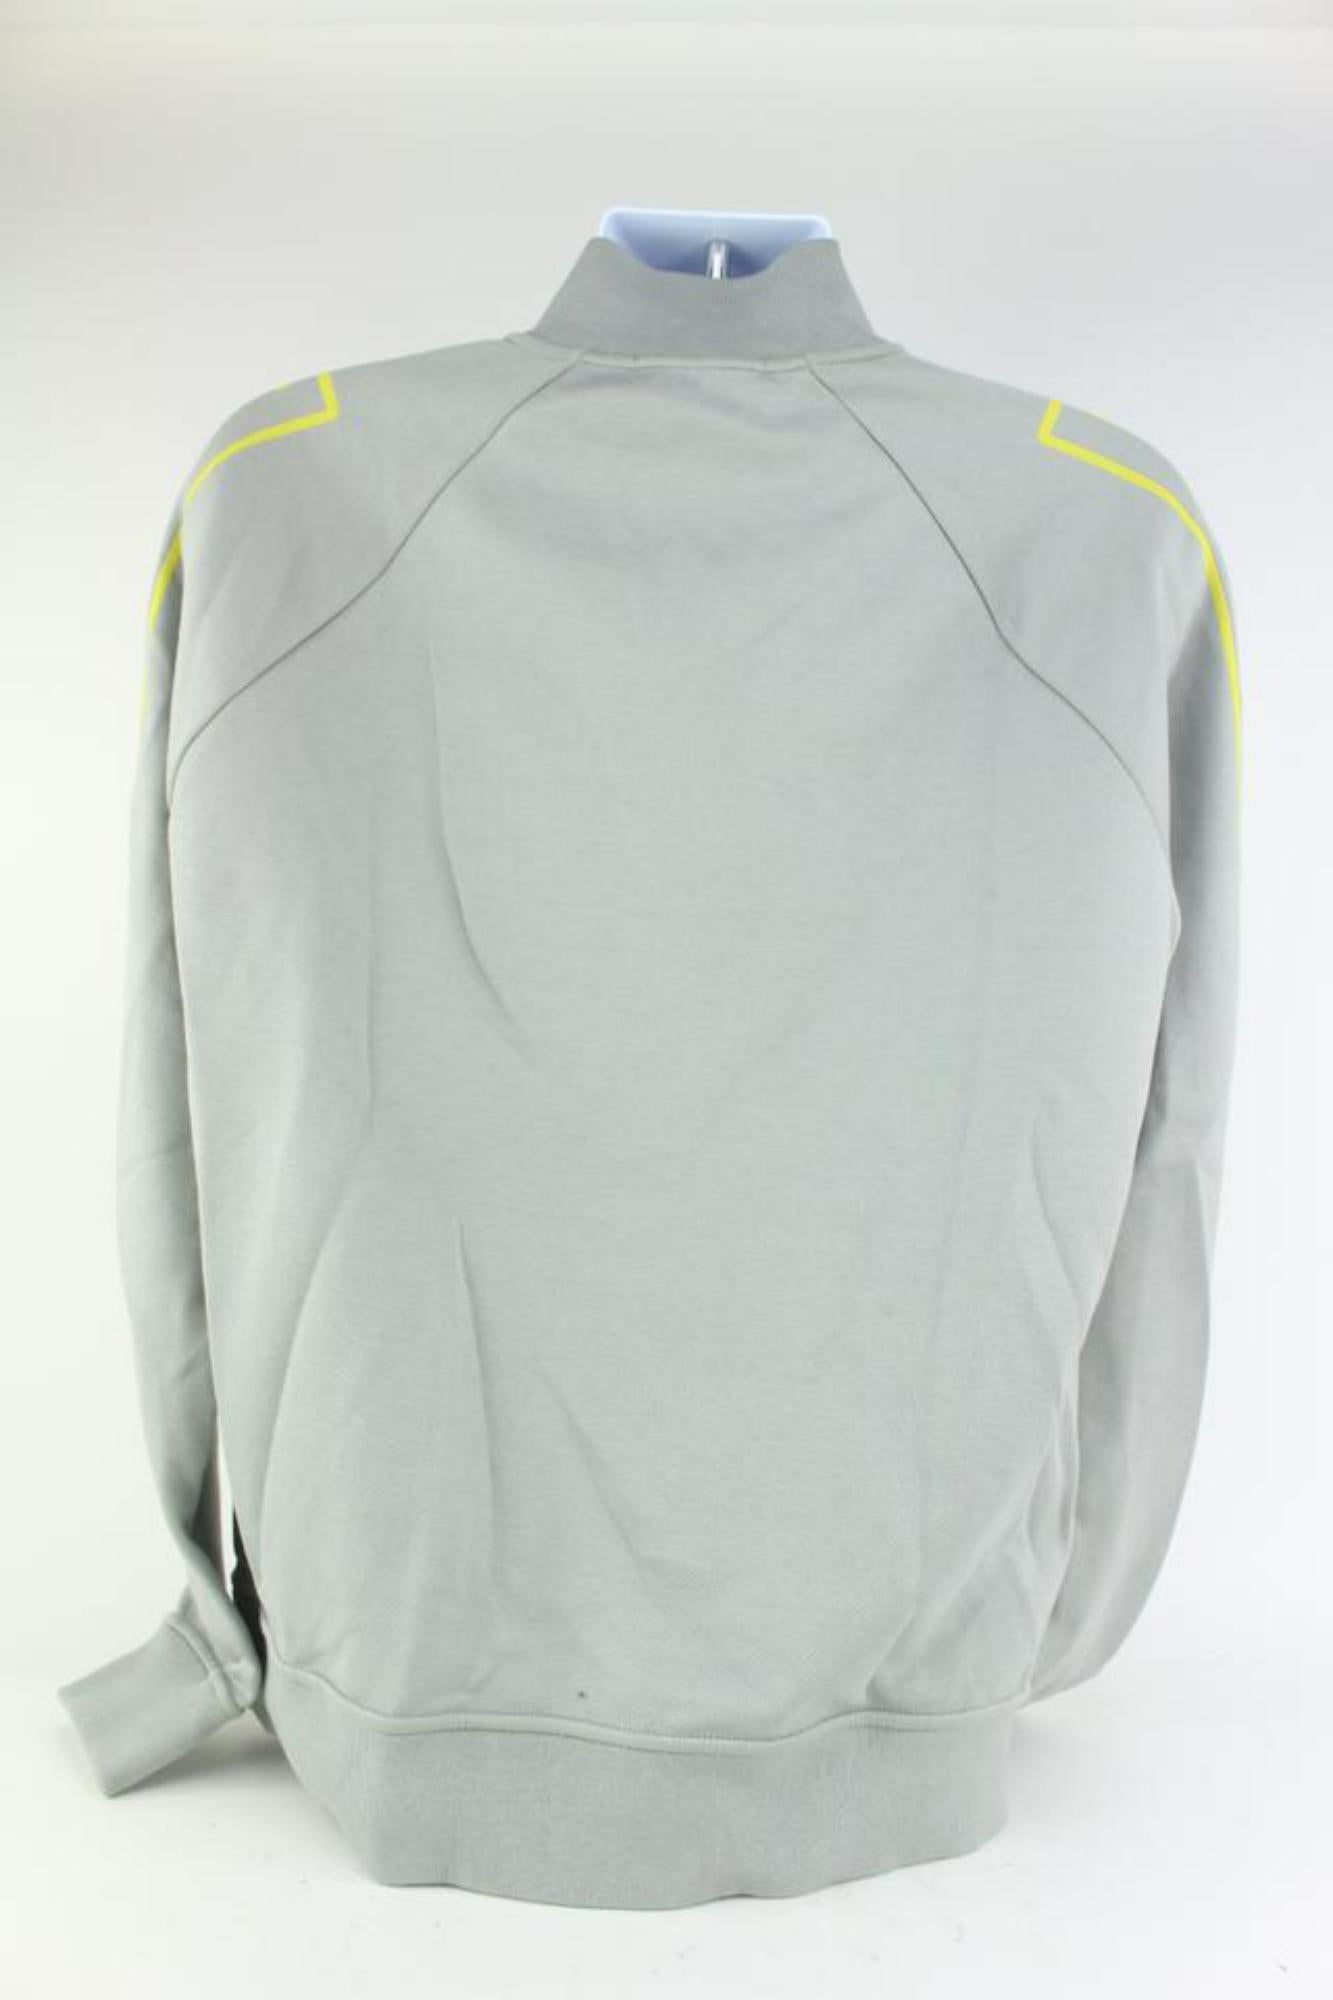 Louis Vuitton Men's XL Grey x Yellow Gravity Raglan Zip Sweater 928lv70 For Sale 6